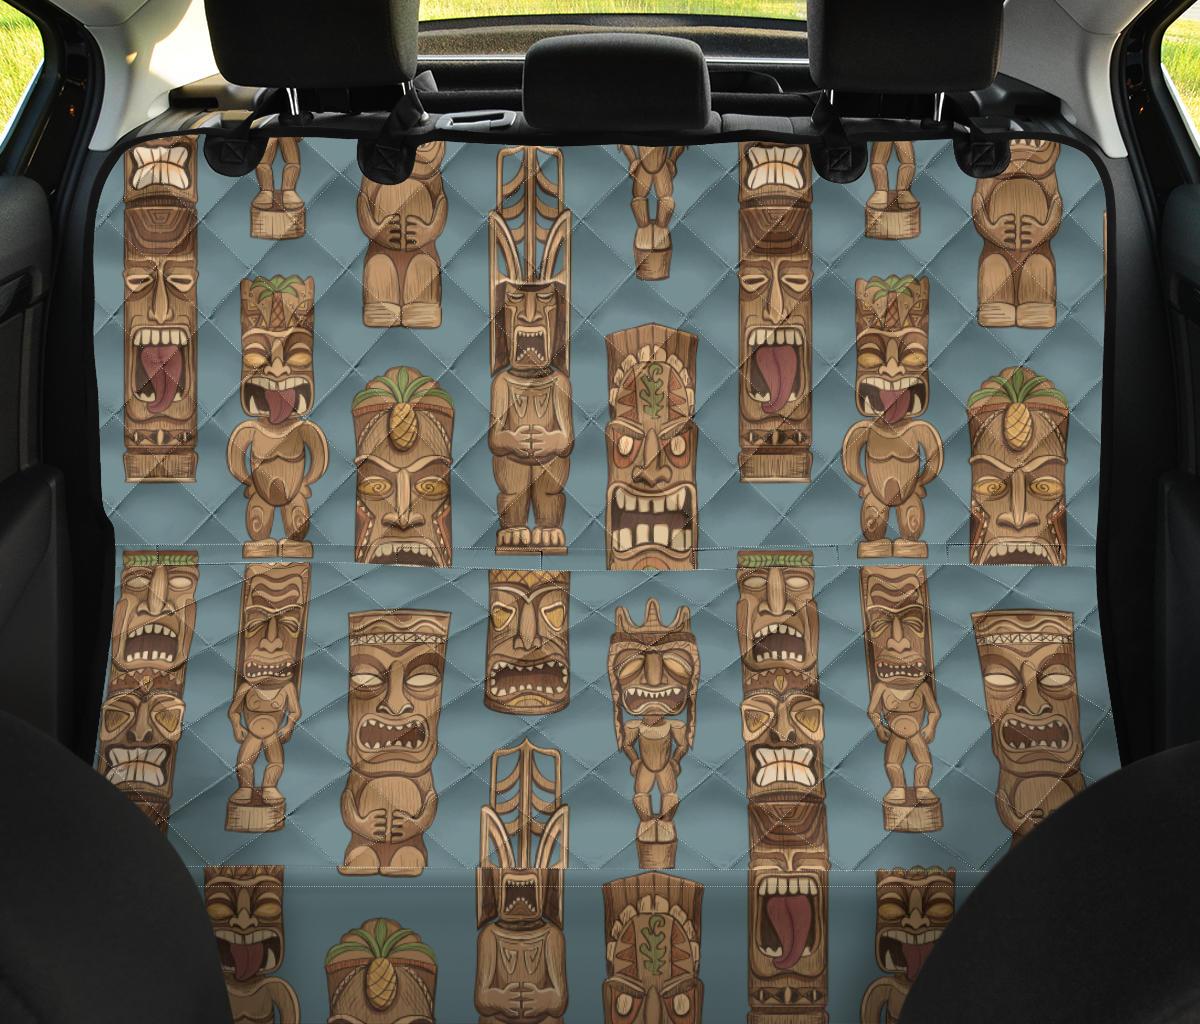 Tiki Print Pattern Pet Car Seat Cover-grizzshop